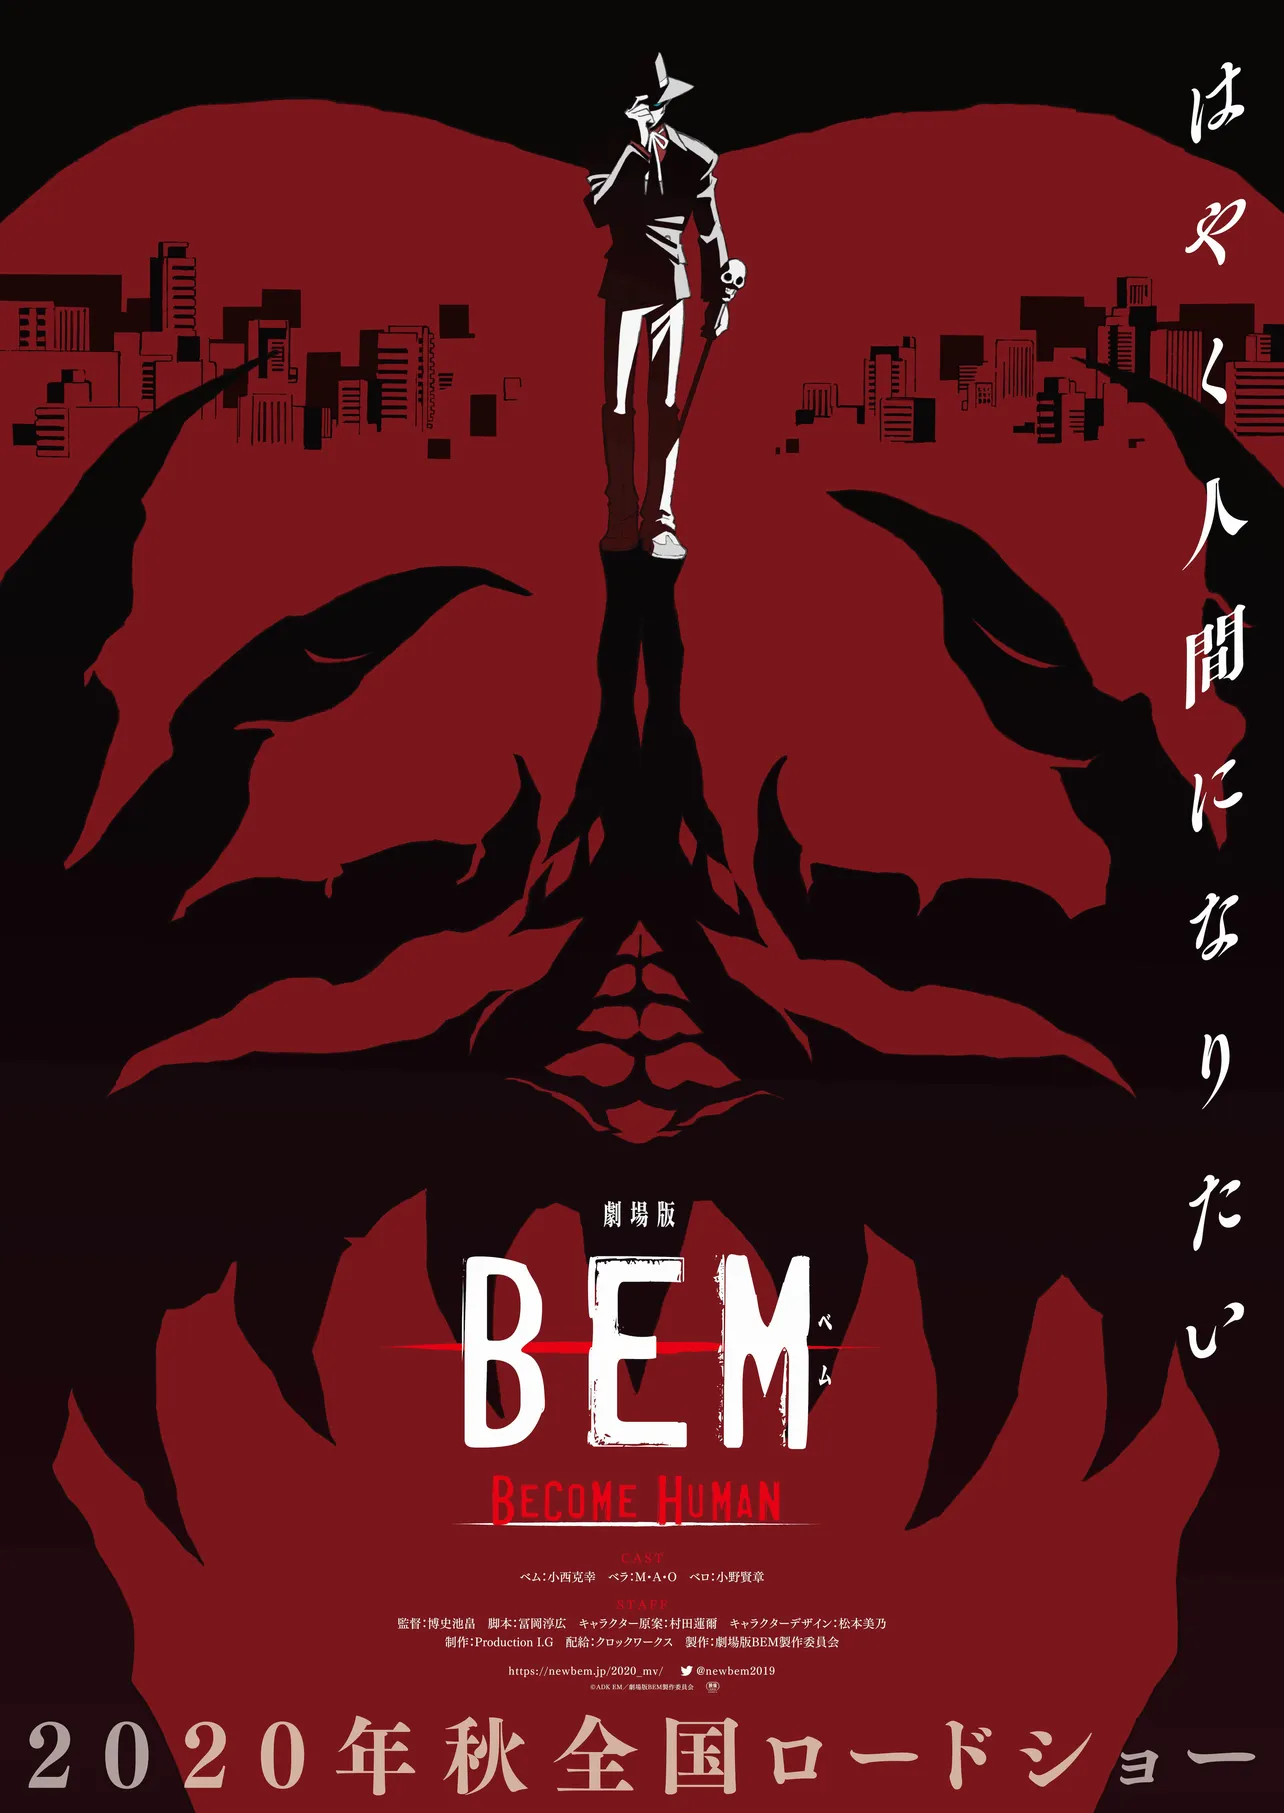 アニメ「BEM」の映画化が決定